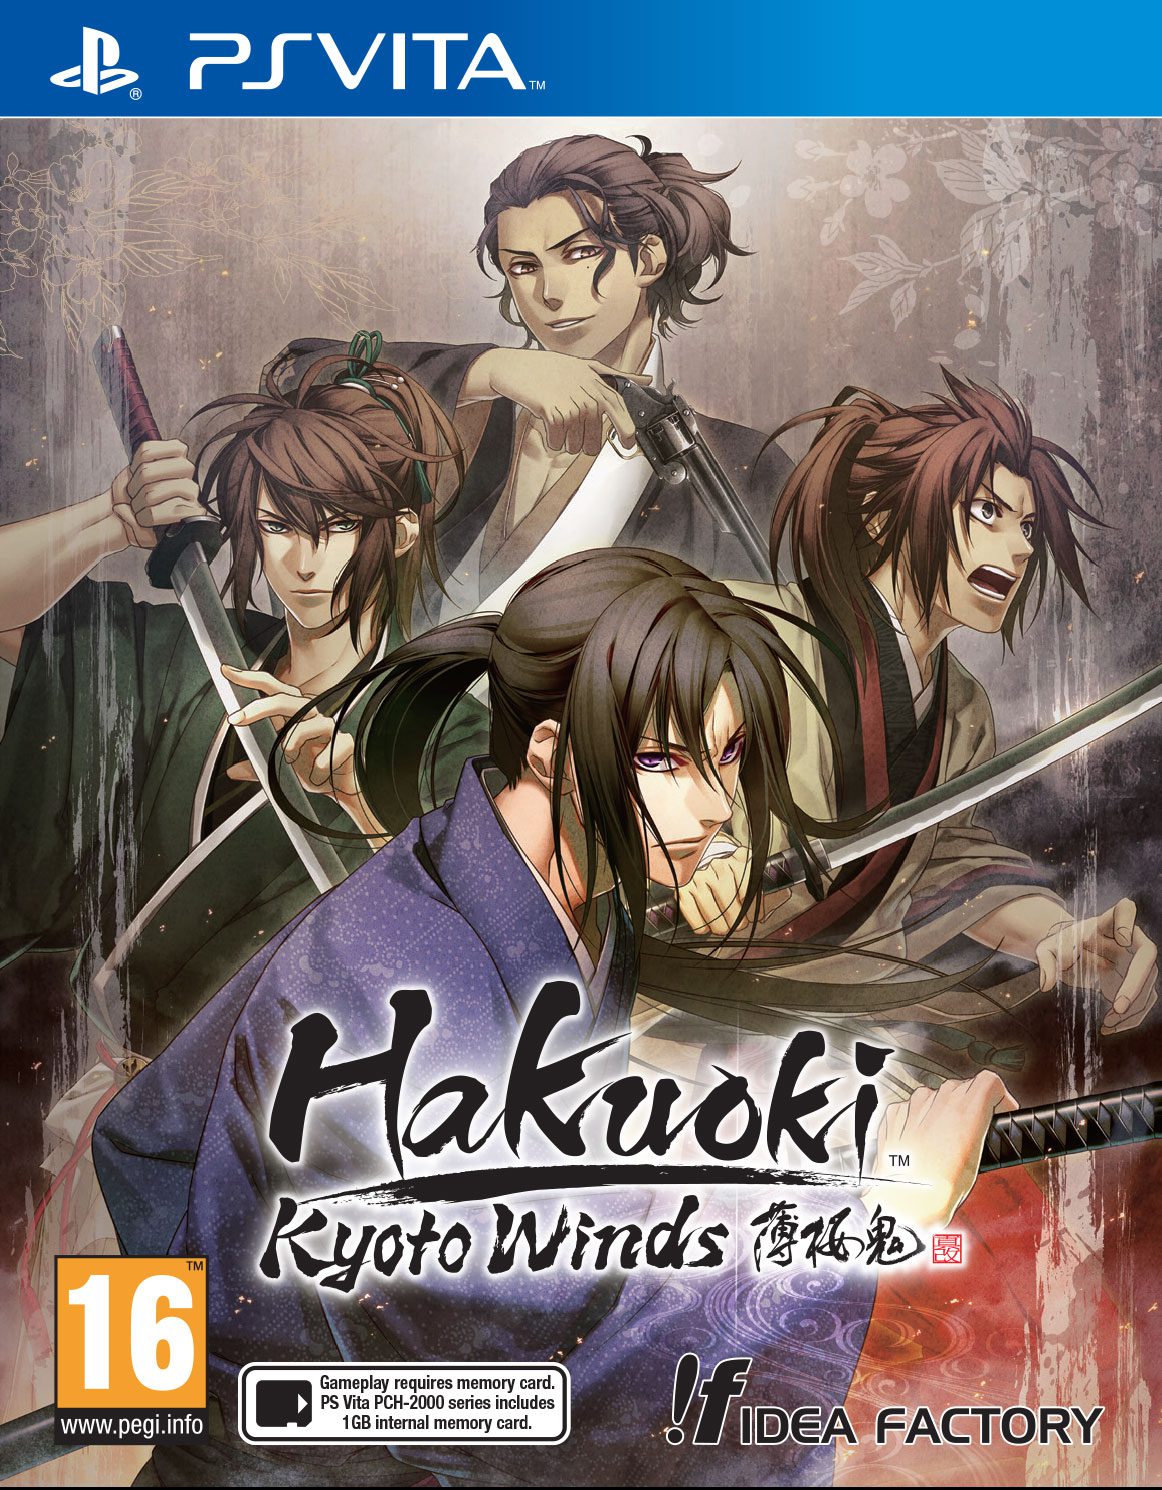 Hakuoki: Kyoto Winds Romances your Vita May 16/19 (NA/EU), plus new screenshots and covers!